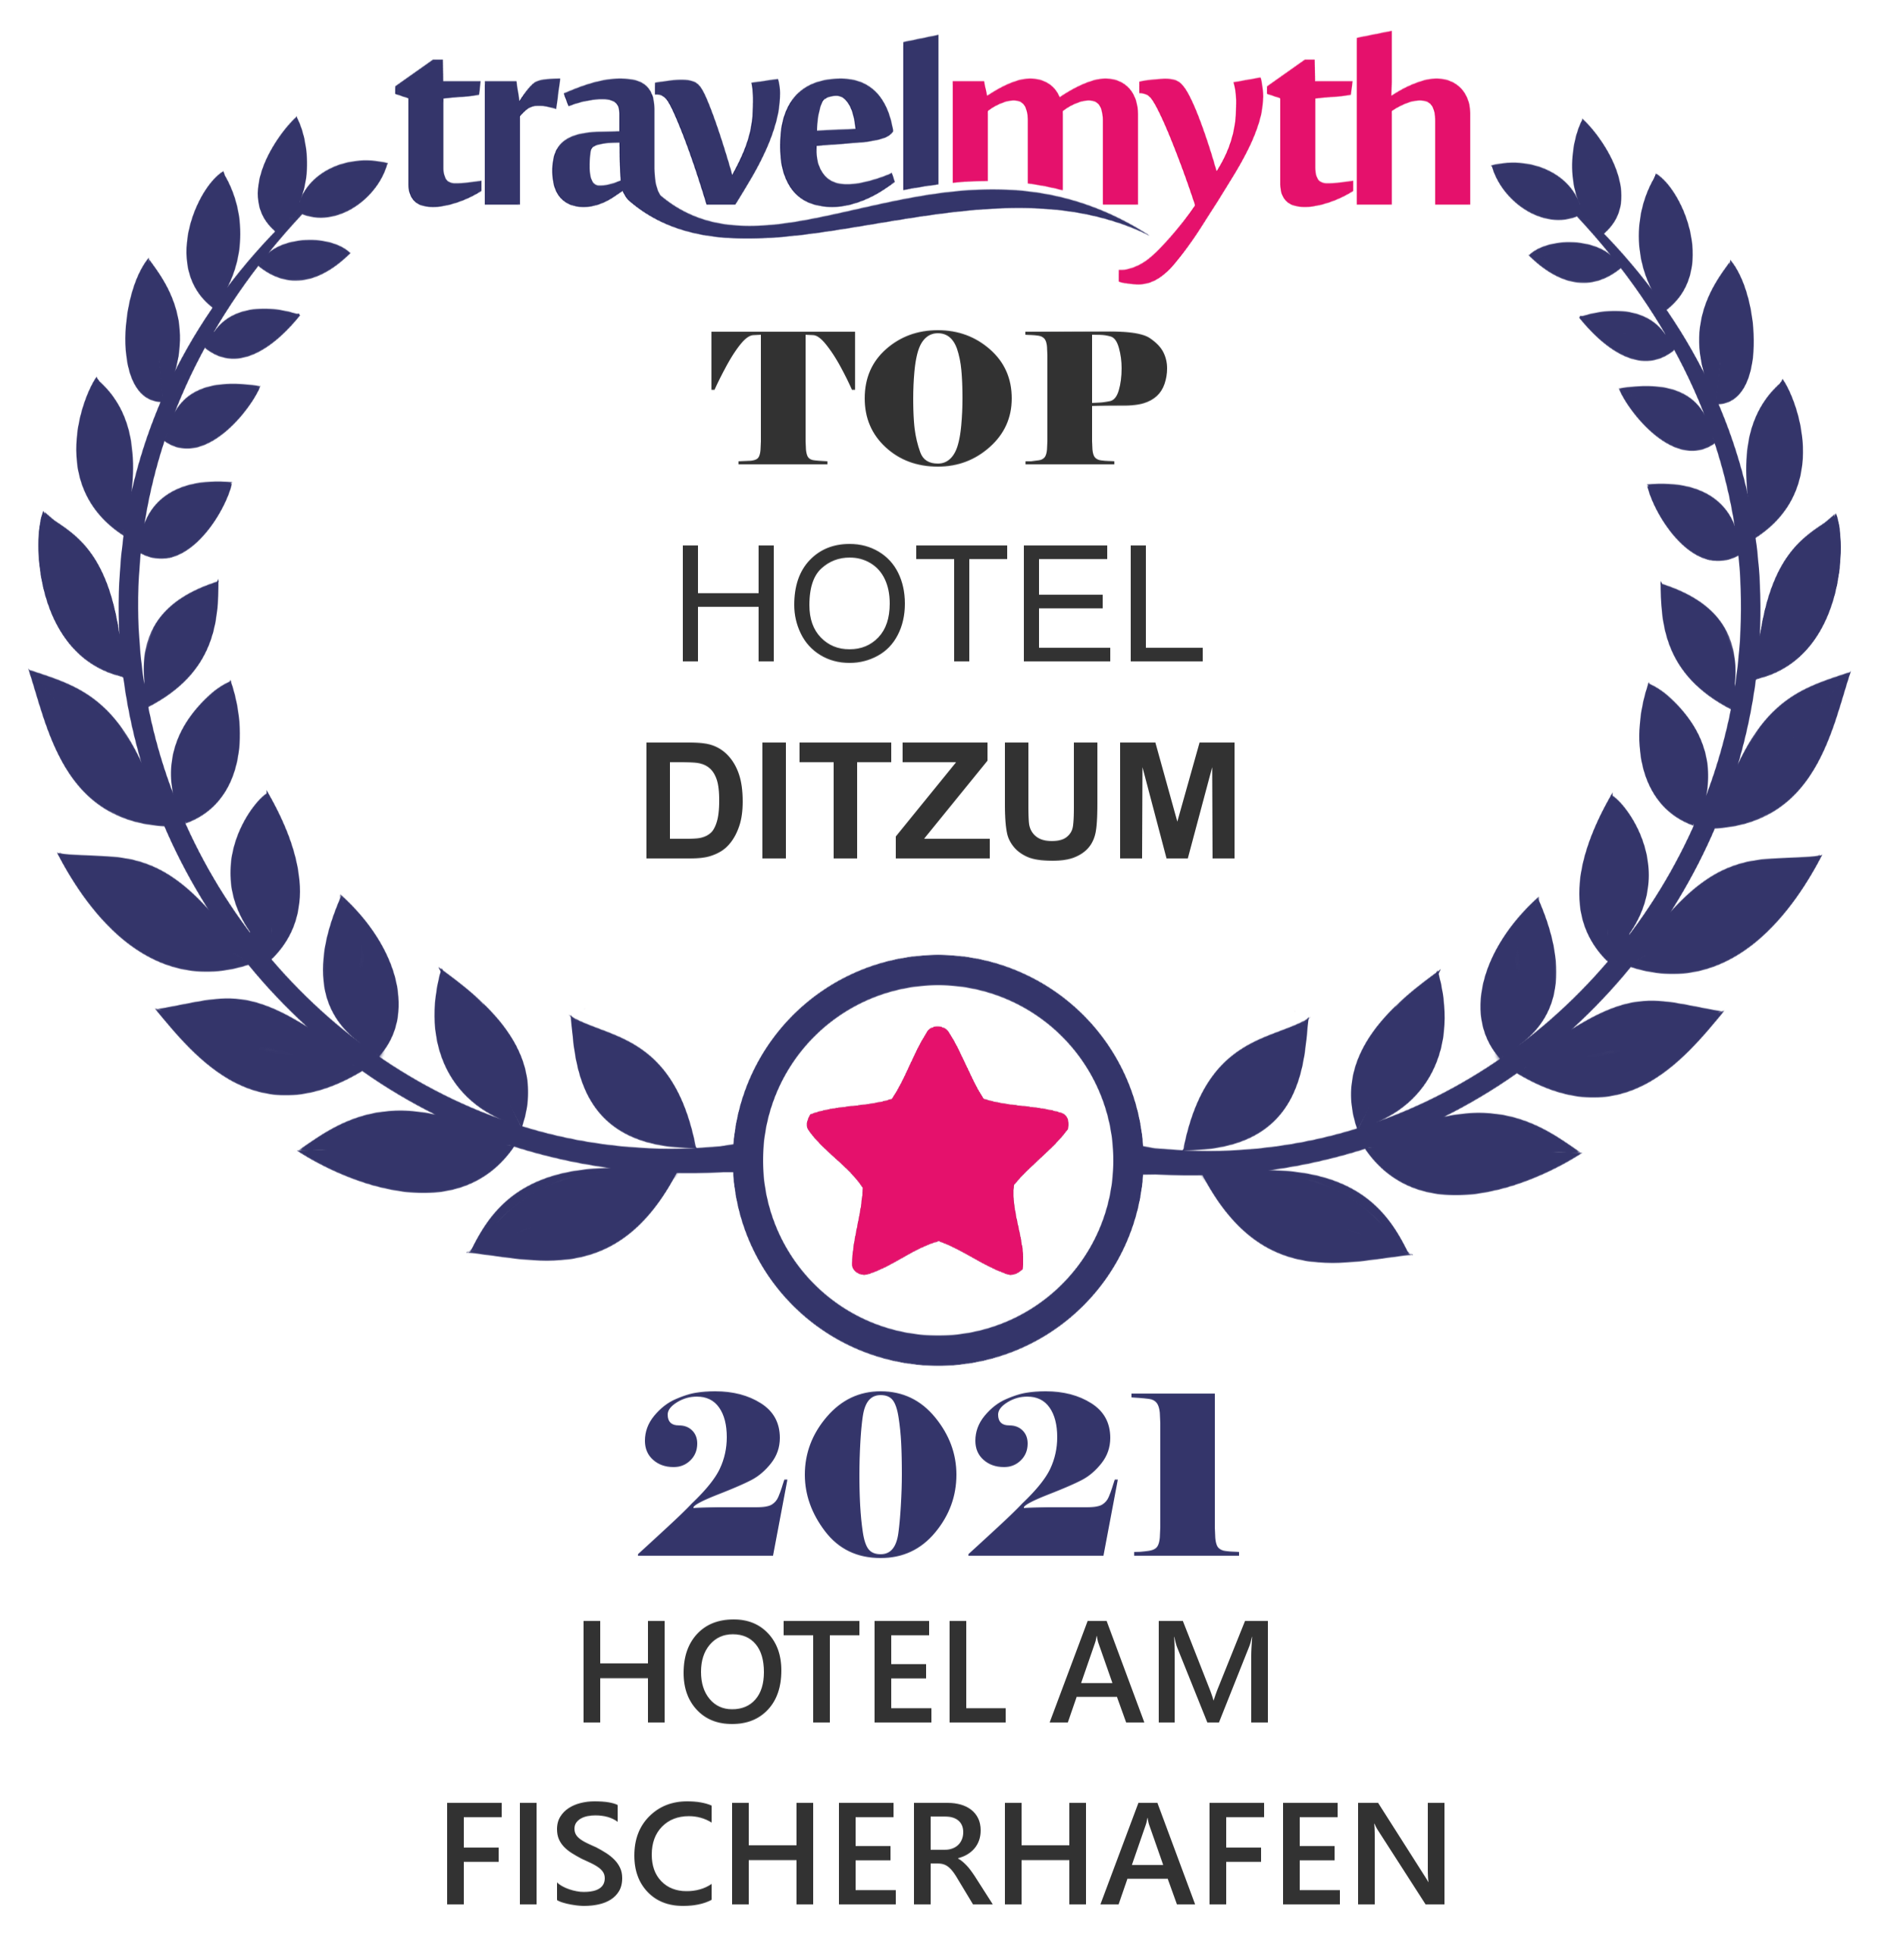 Travelmyth Award für Top Hotel Ditzum